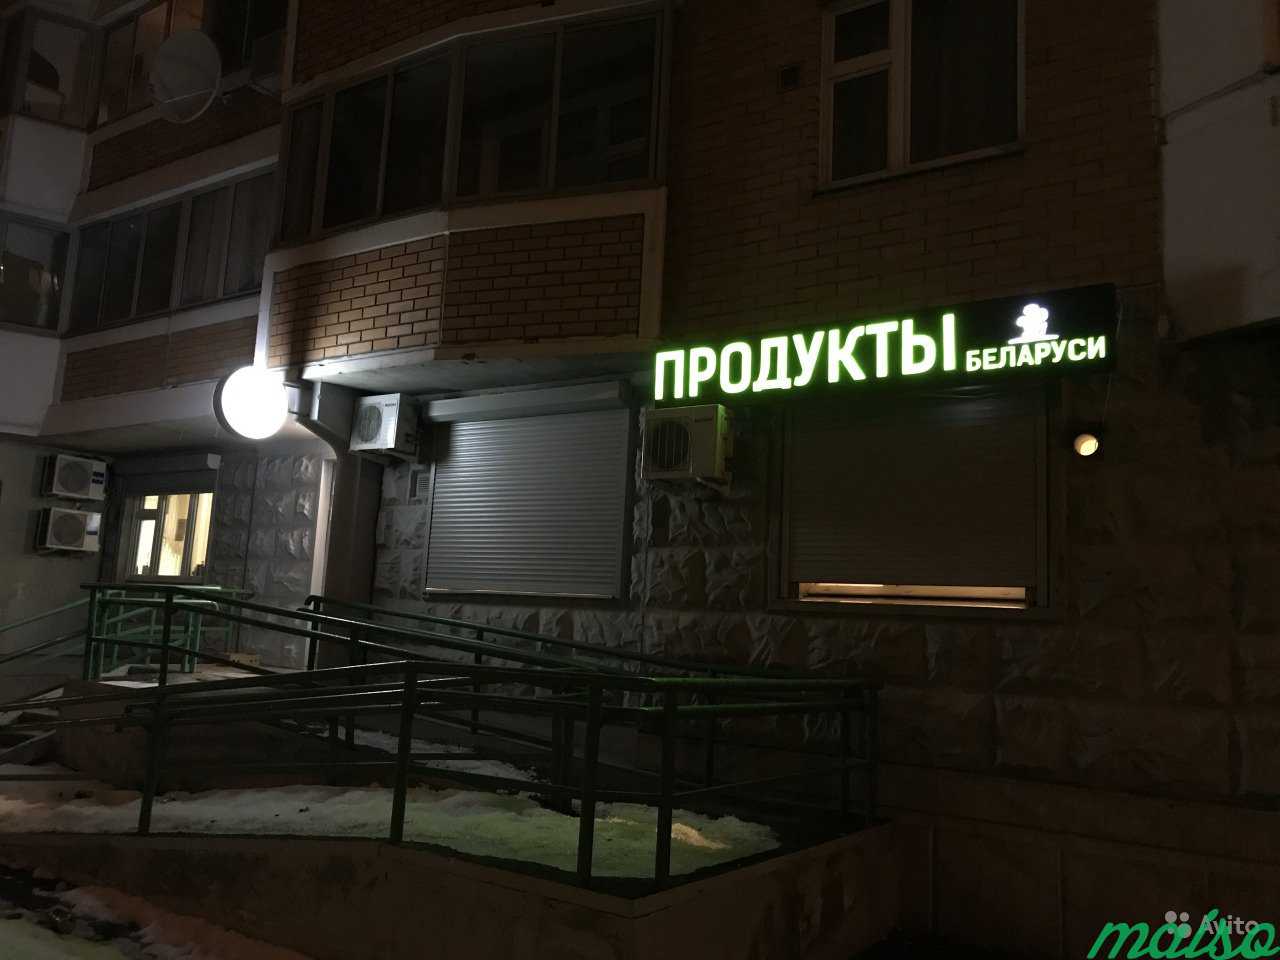 Продуктовый магазин с окупаемостью менее 6 месяцев в Москве. Фото 1